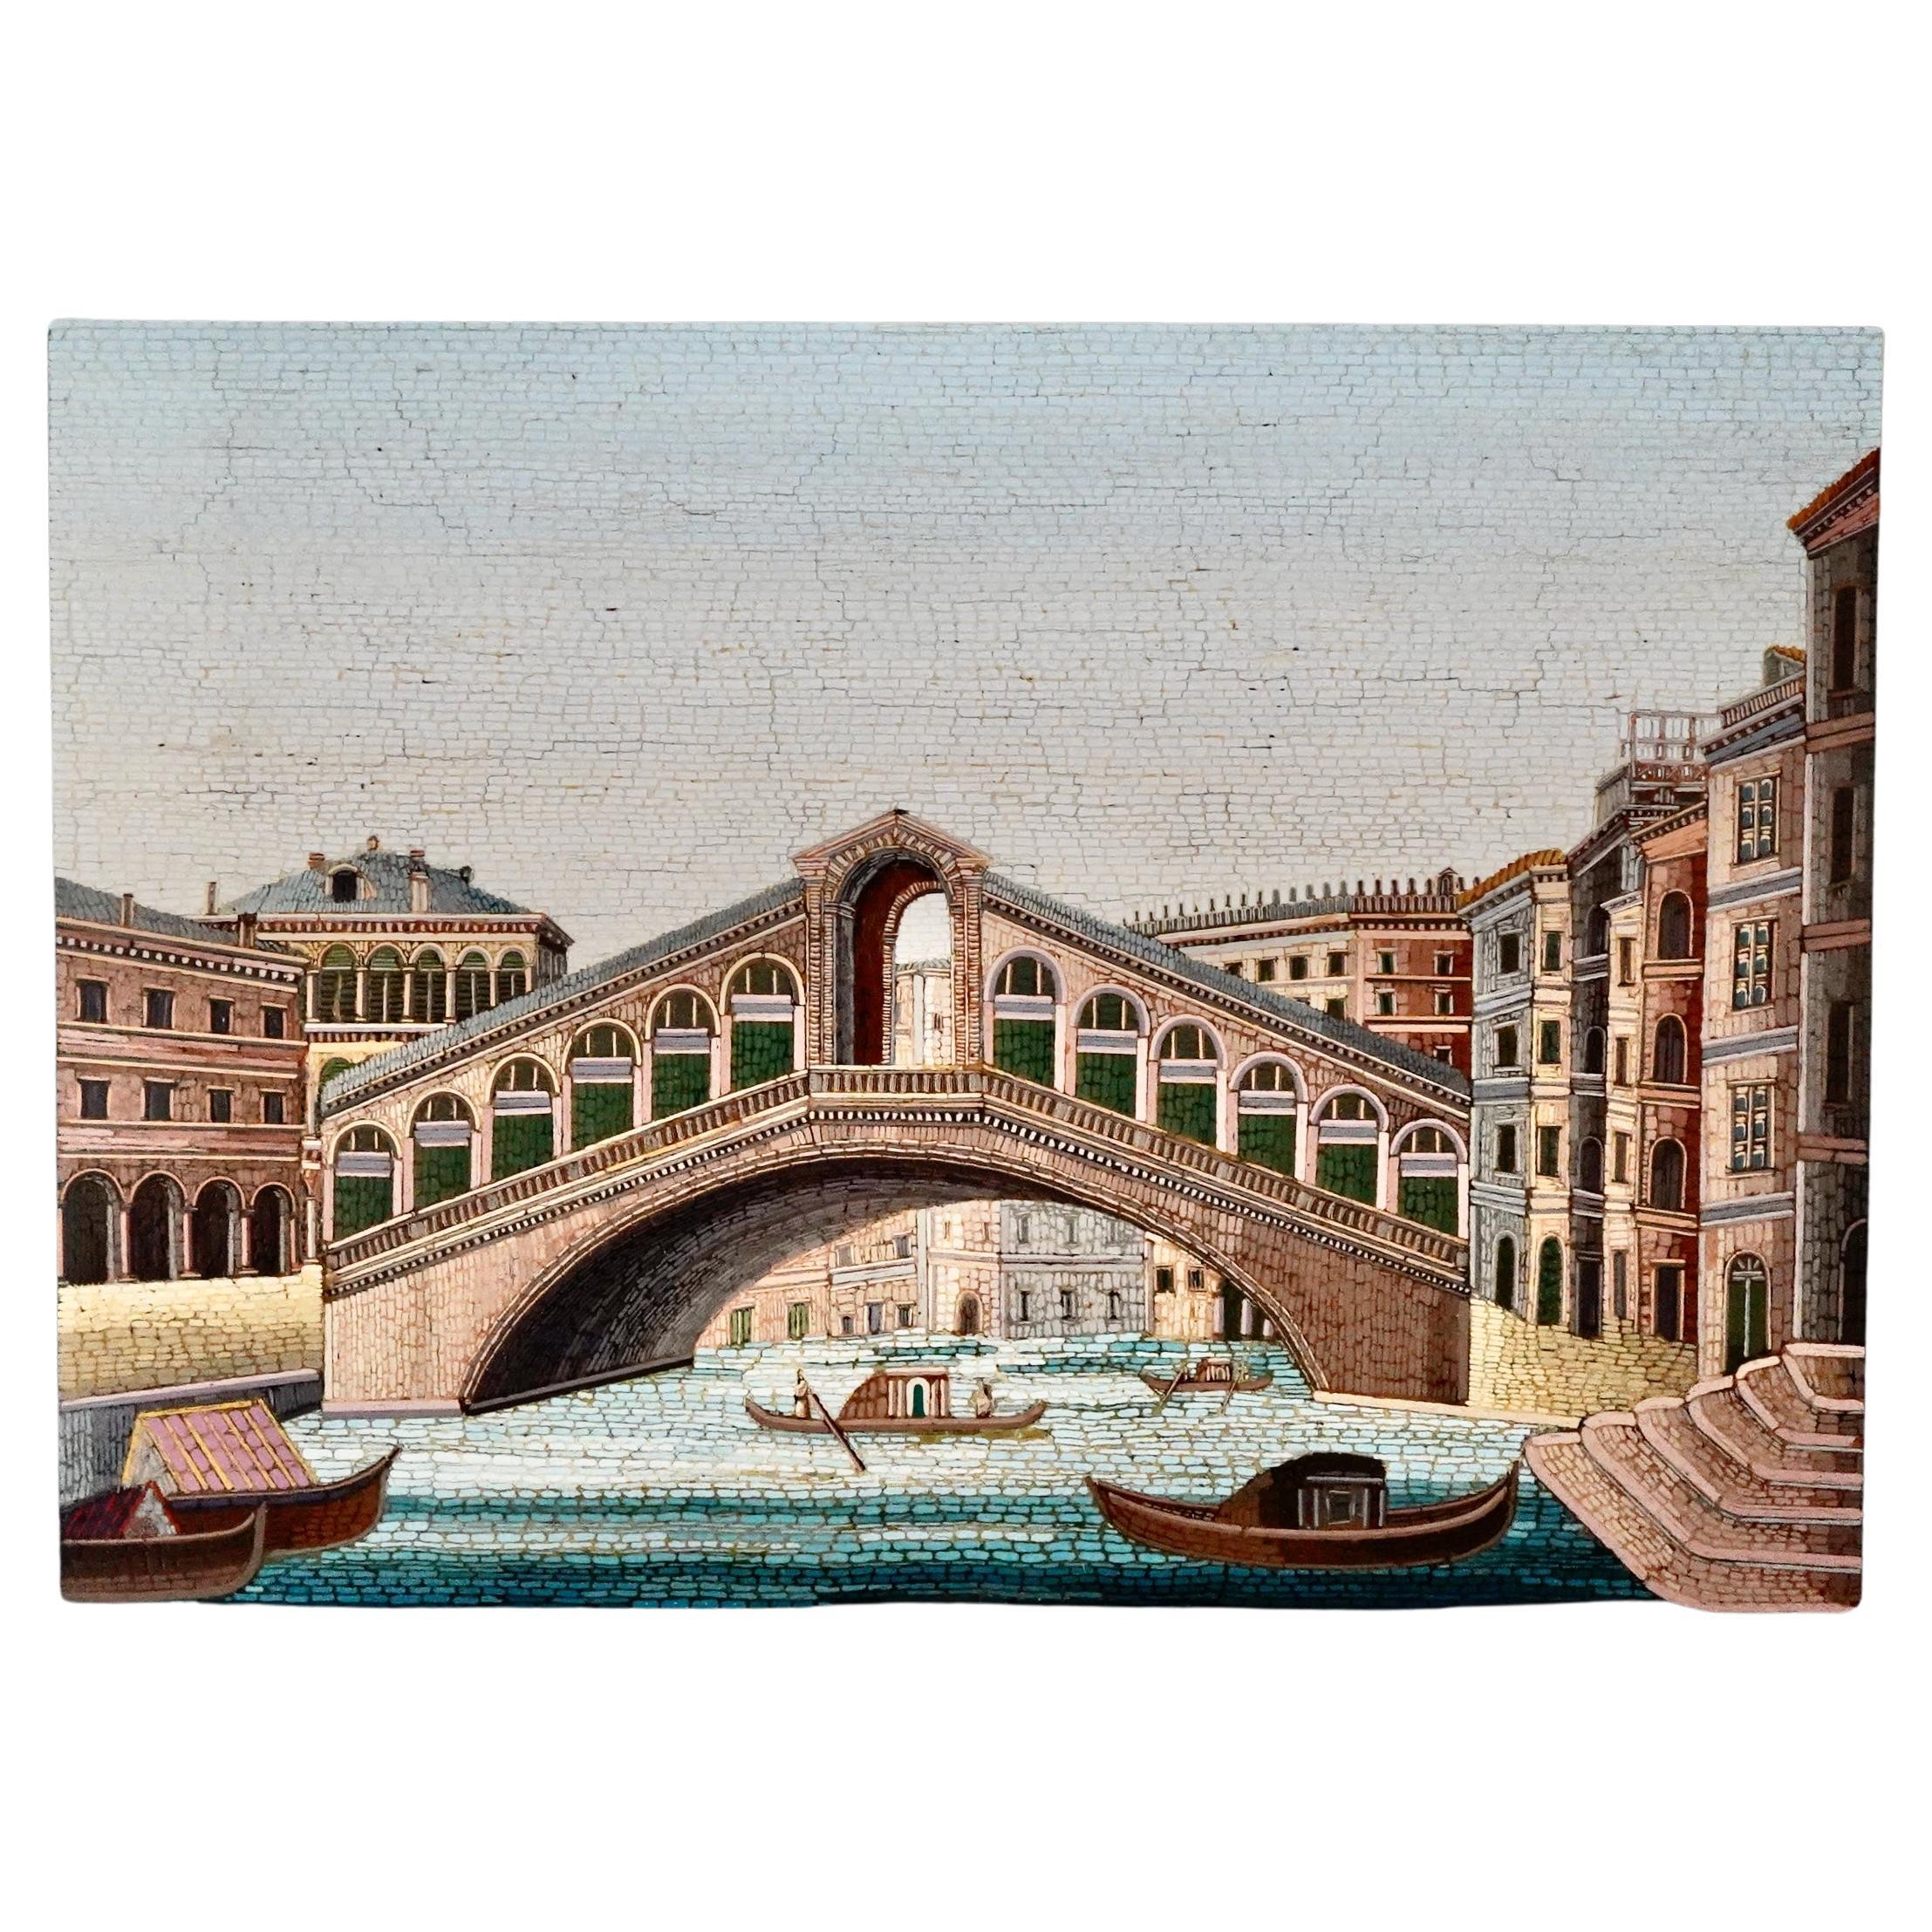 Italienische Mikromosaik-Plakette mit Blick auf die Rialto-Brücke in Venedig.